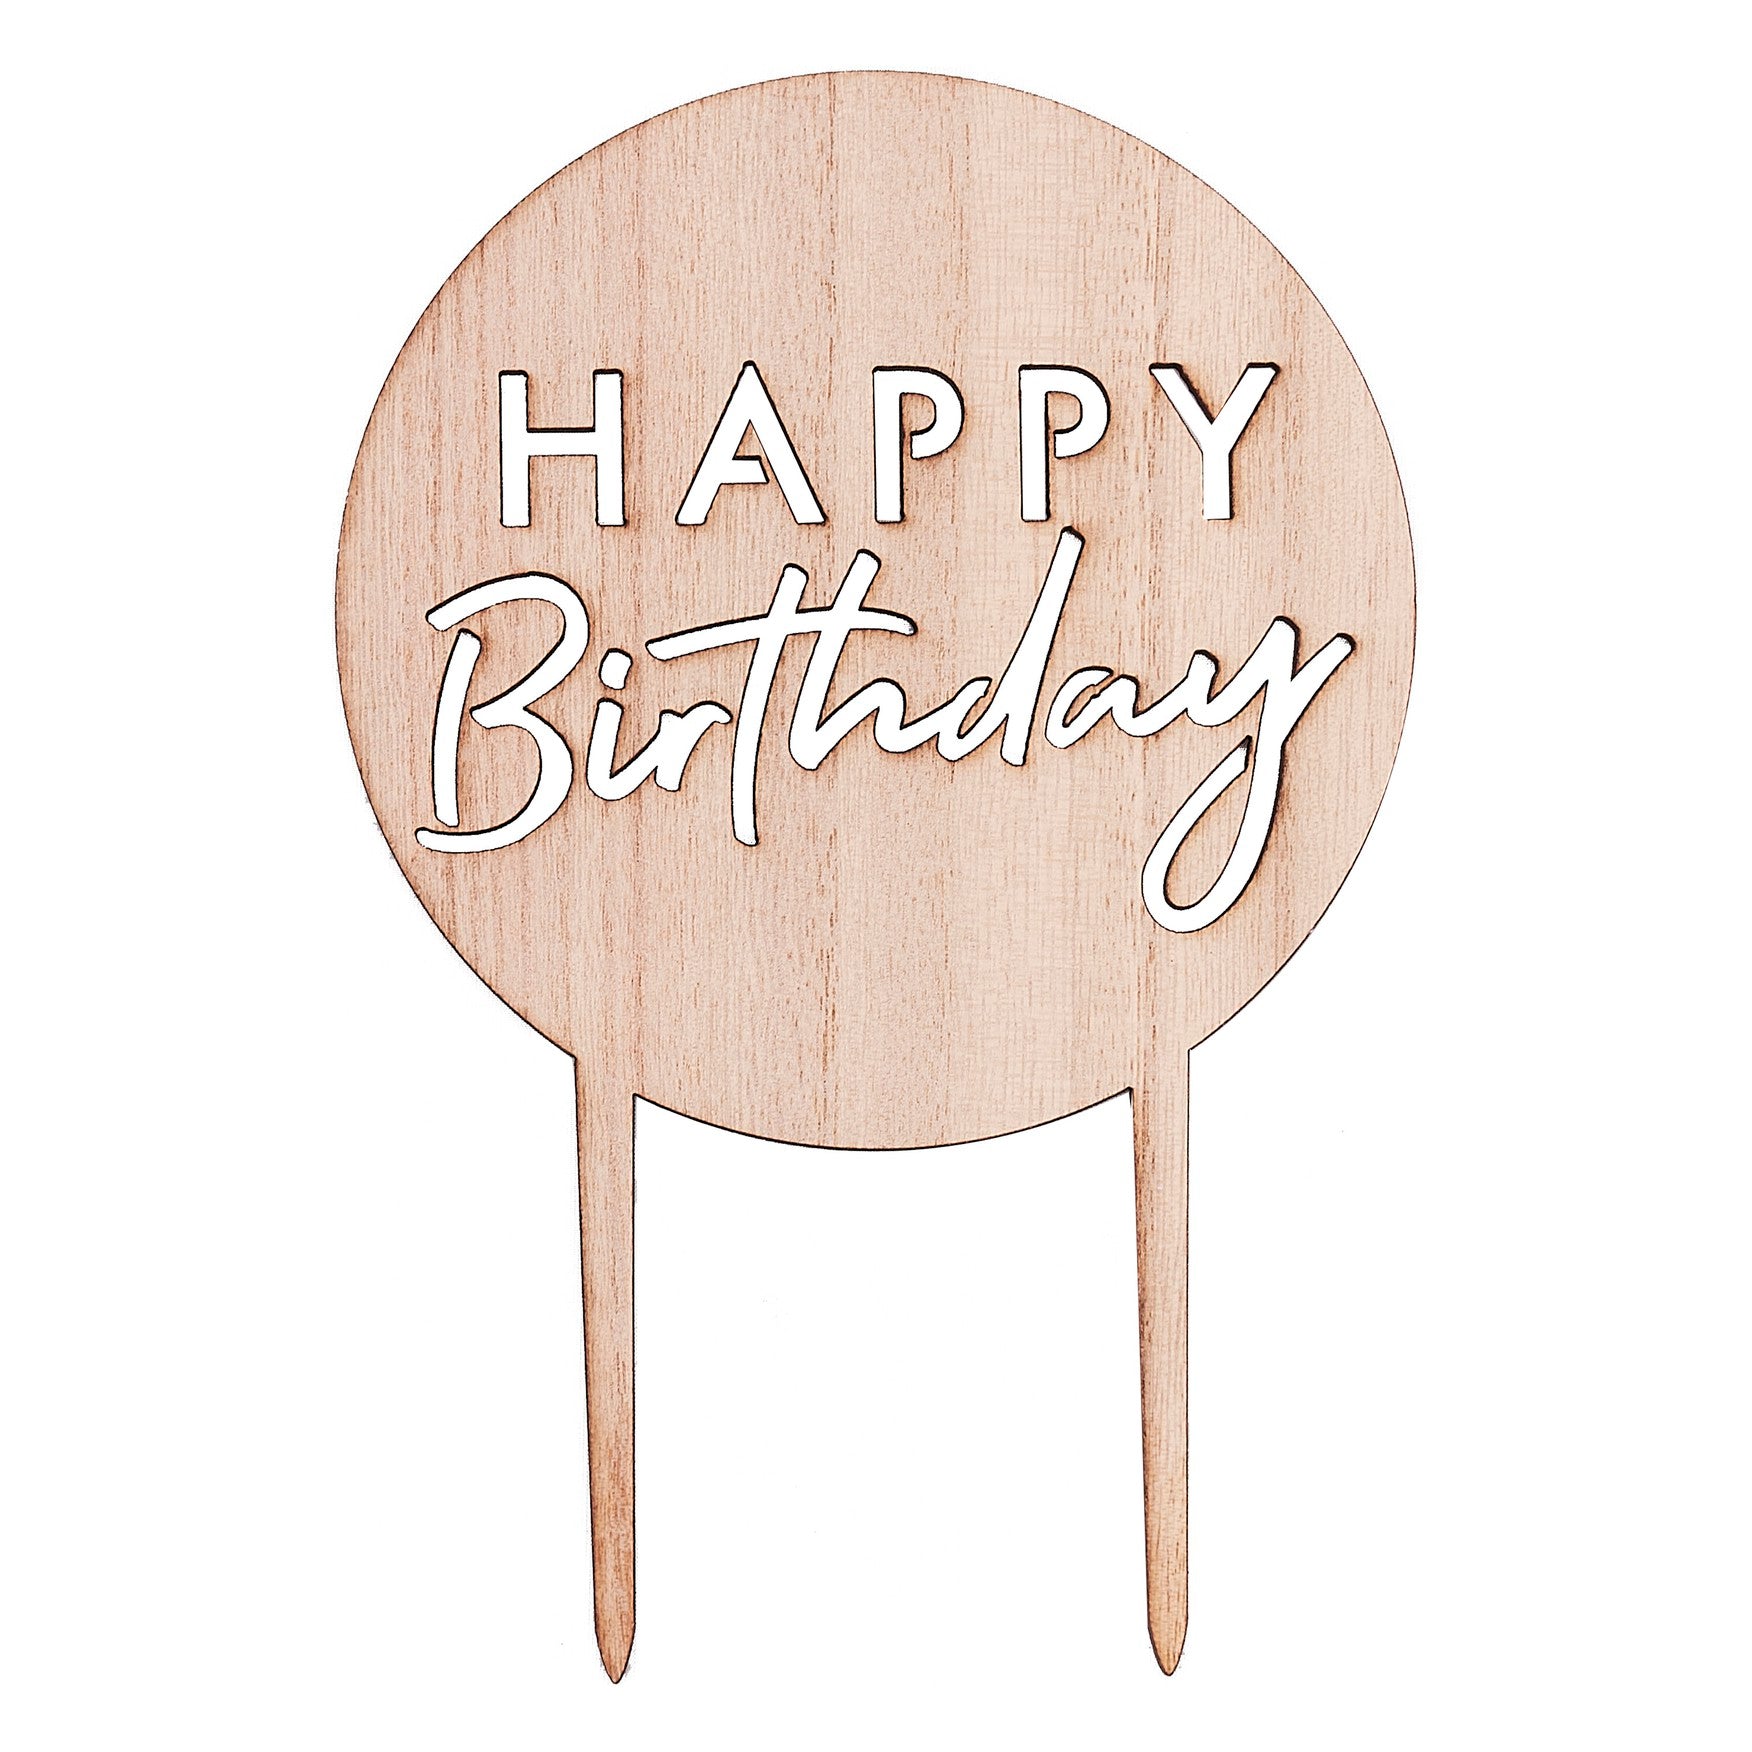 Cake decoration Happy Birthday wood texture 18 cm x 12 cm